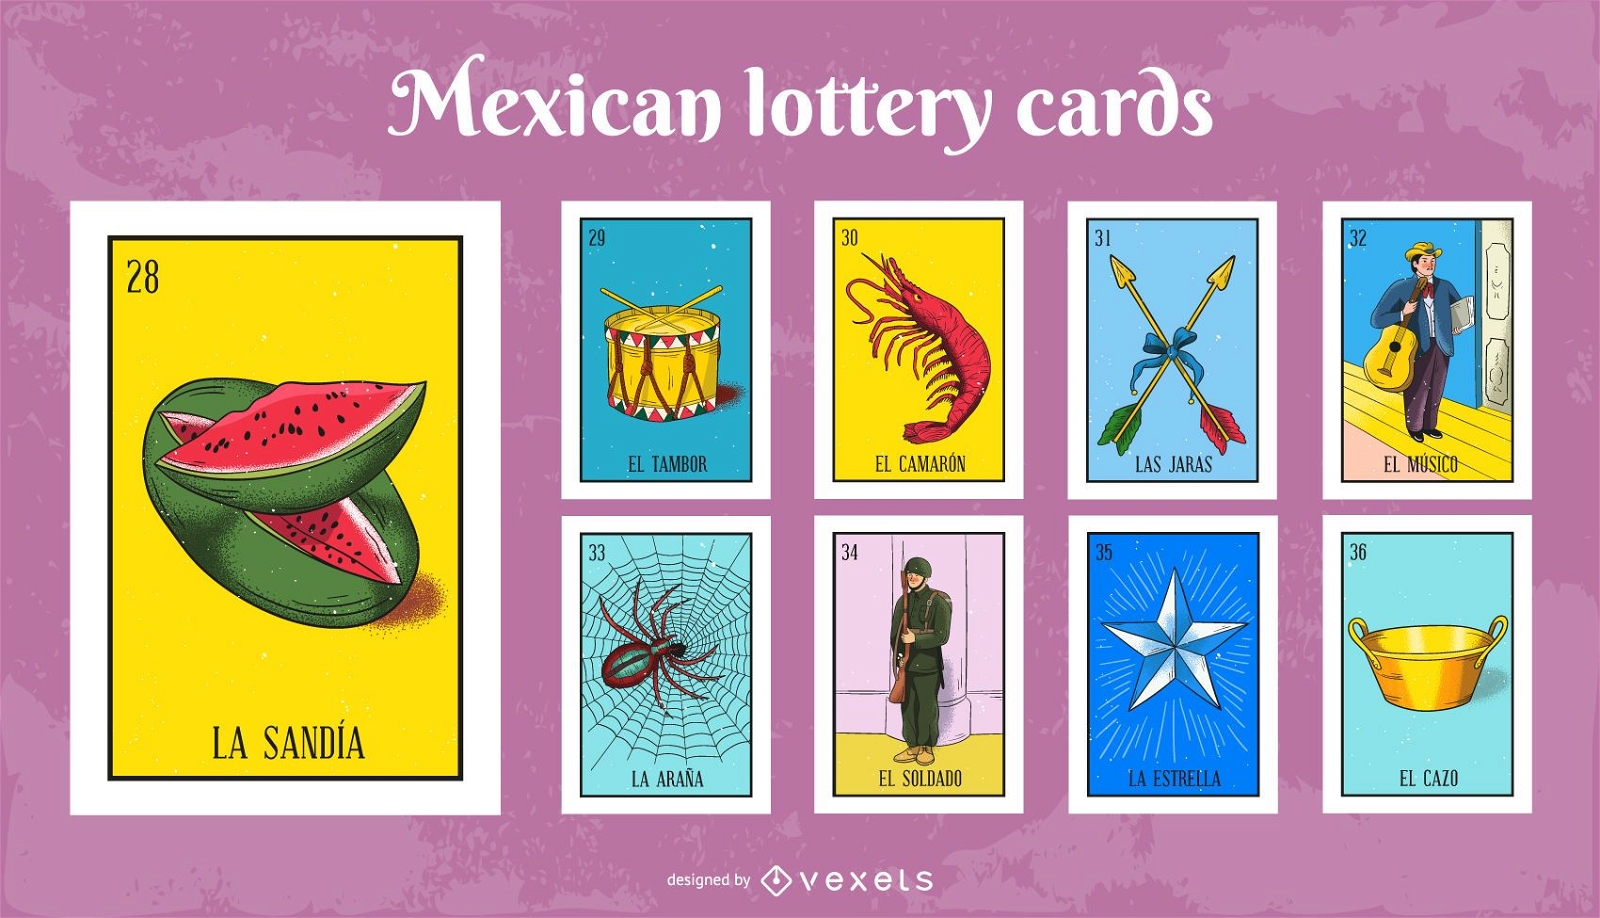 Imagenes De La Loteria Mexicana Png.